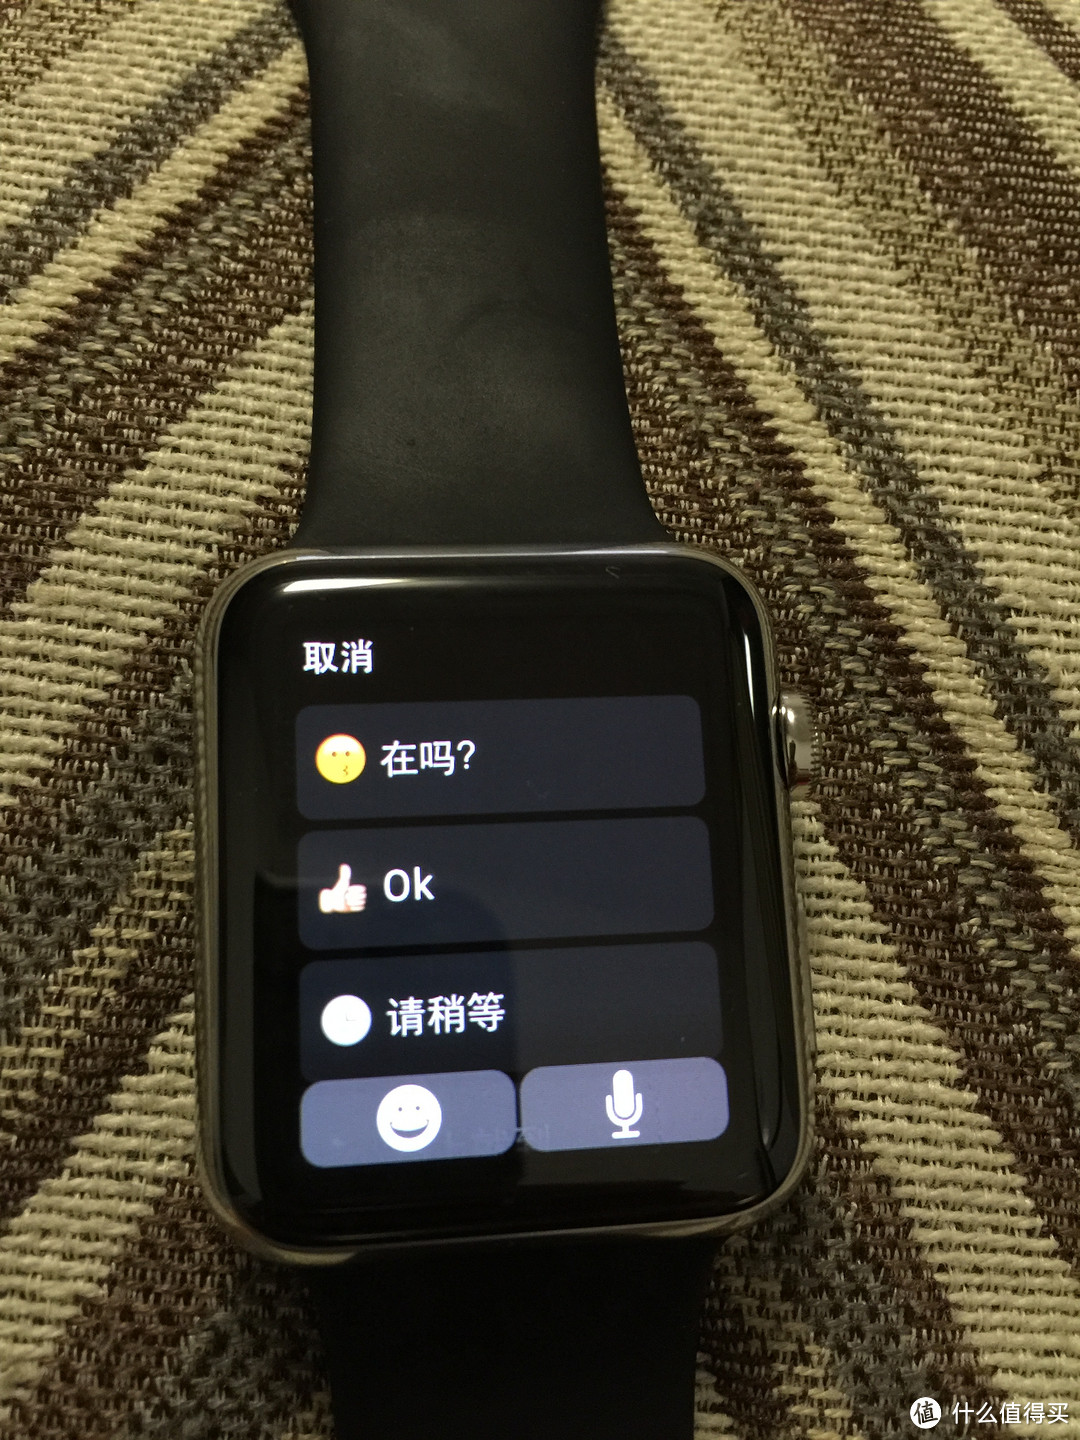 想说爱你不容易：Apple Watch 首发功能评测